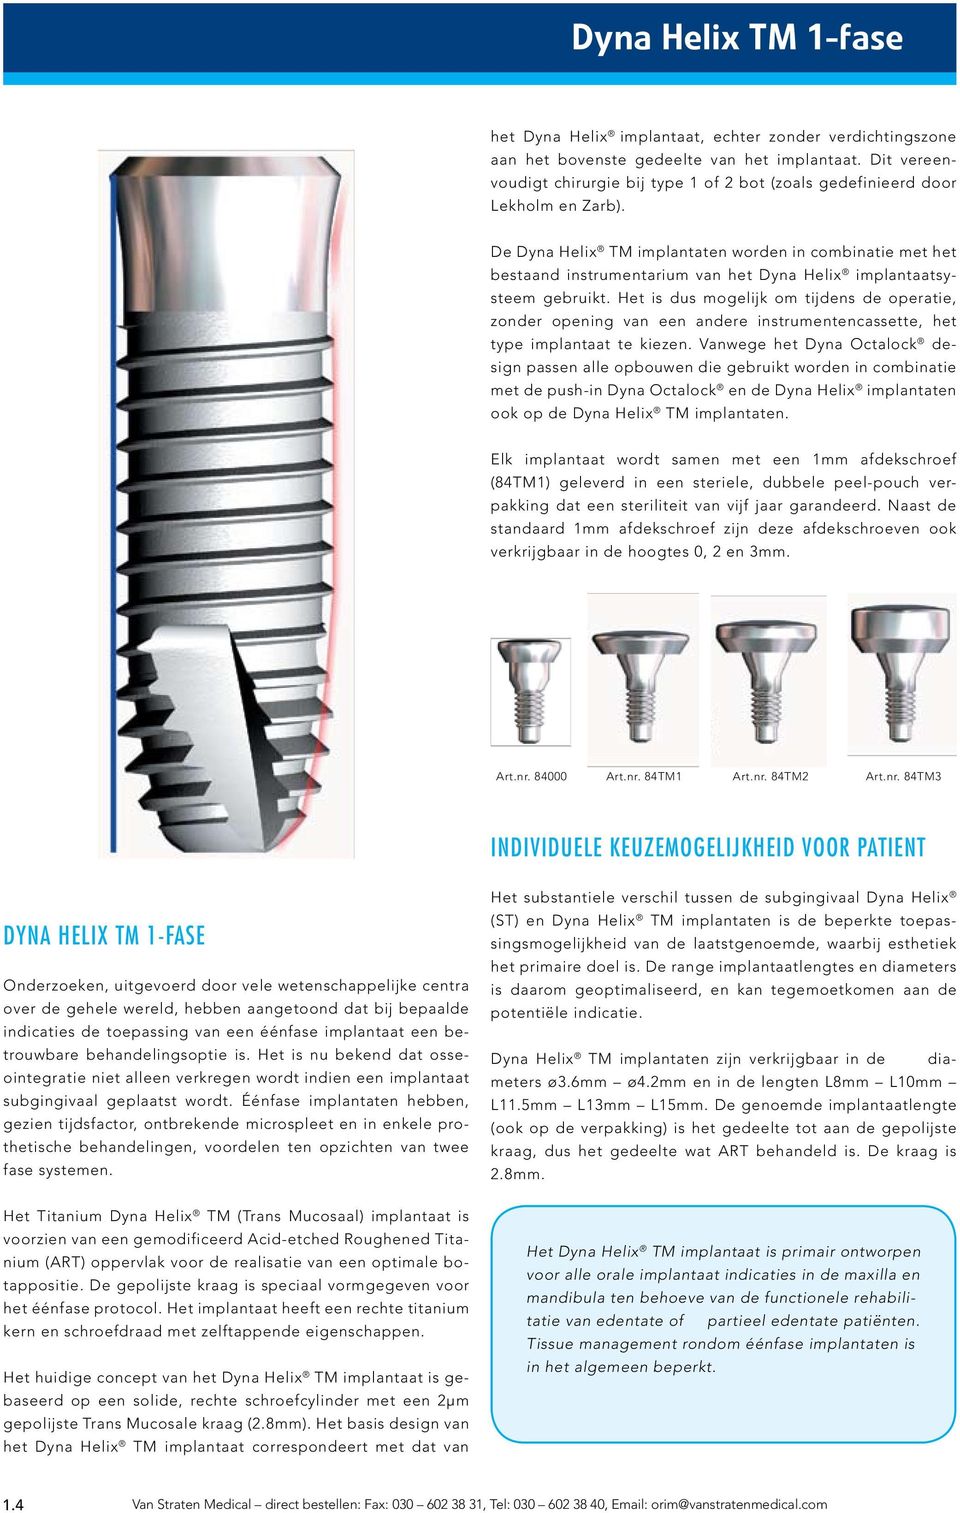 De Dyna Helix TM implantaten worden in combinatie met het bestaand instrumentarium van het Dyna Helix implantaatsysteem gebruikt.